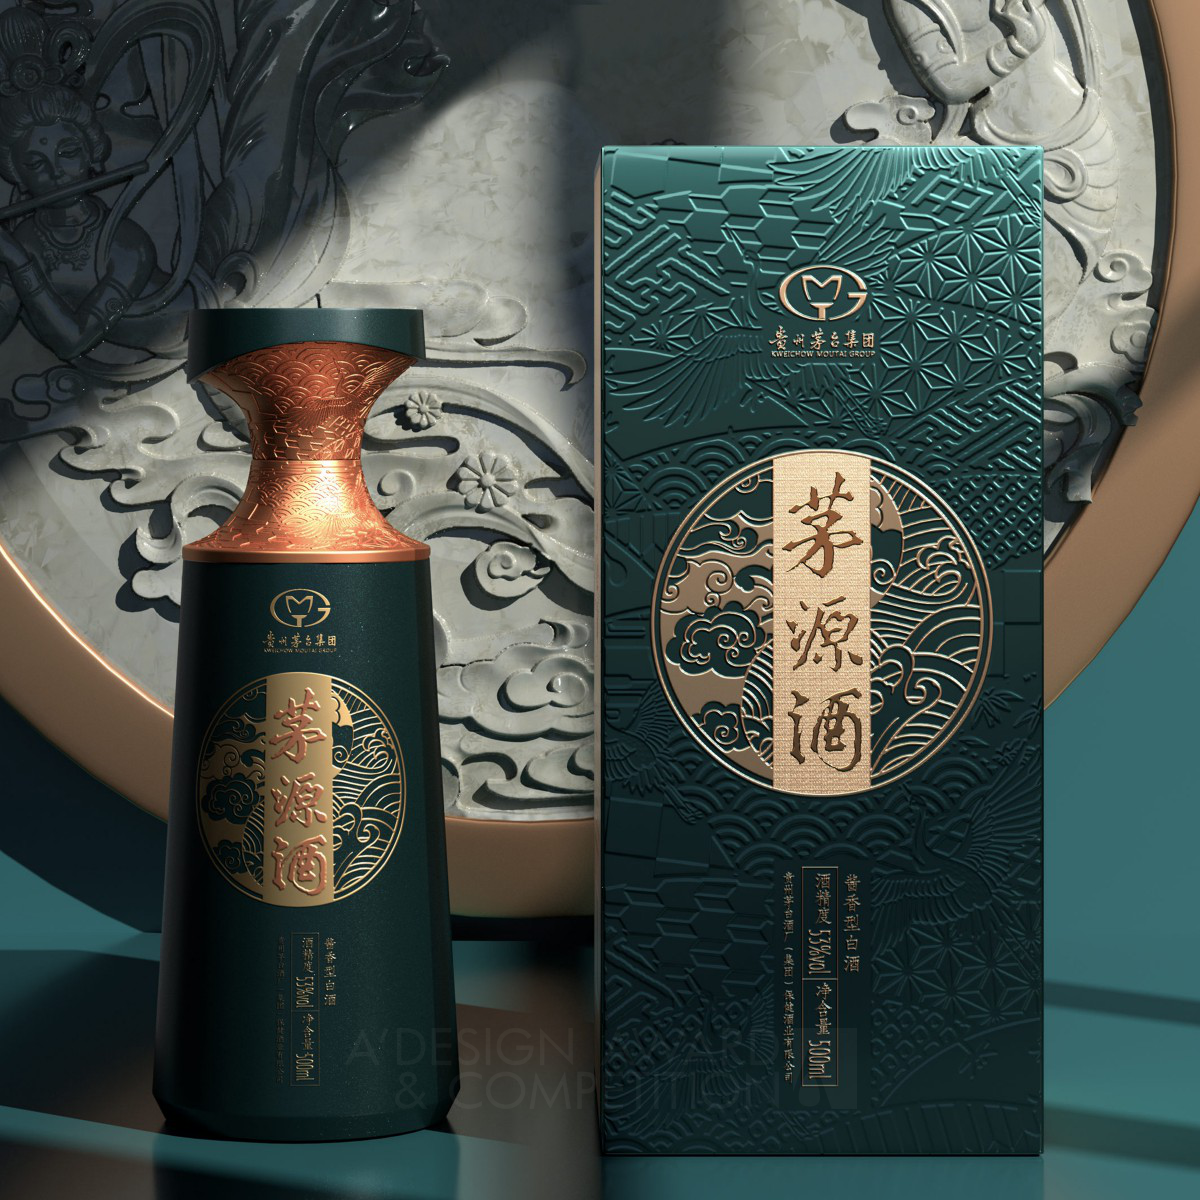 中国伝統文化と現代デザインが融合した酒のパッケージ